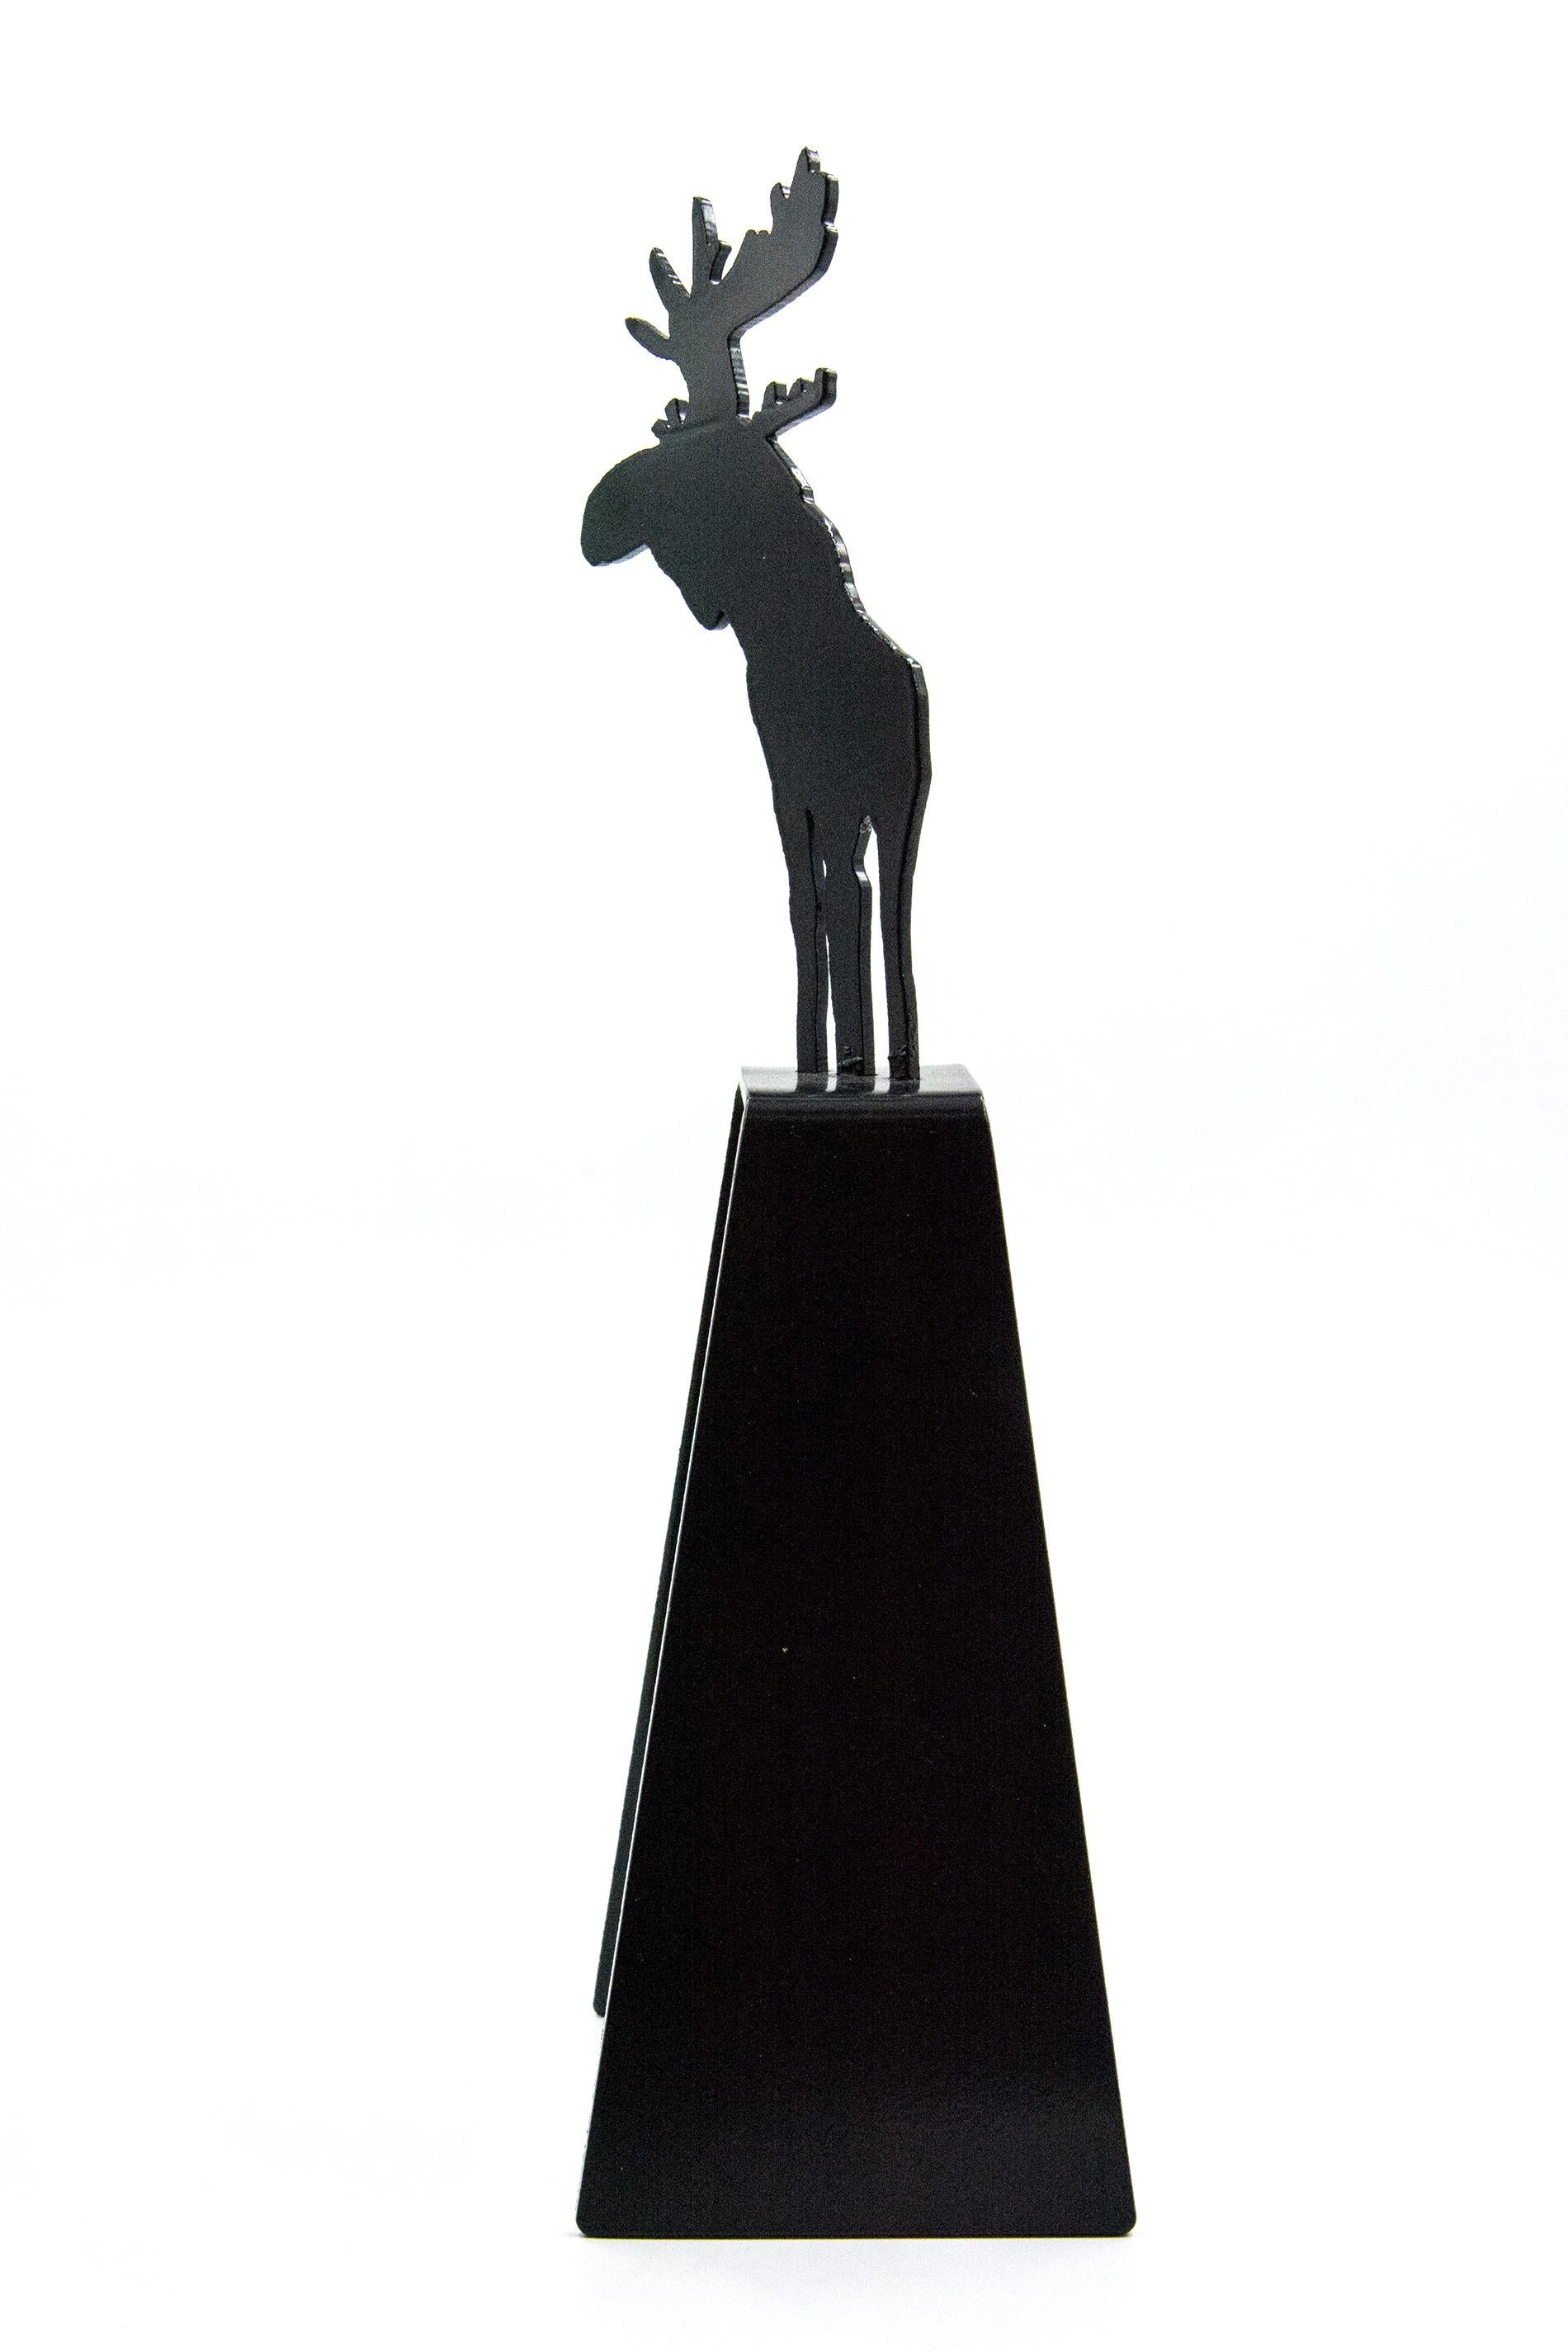 Mooseconstrue 1/4 - small, playful, pop art, Canadian, aluminum sculpture - Pop Art Sculpture by Charles Pachter